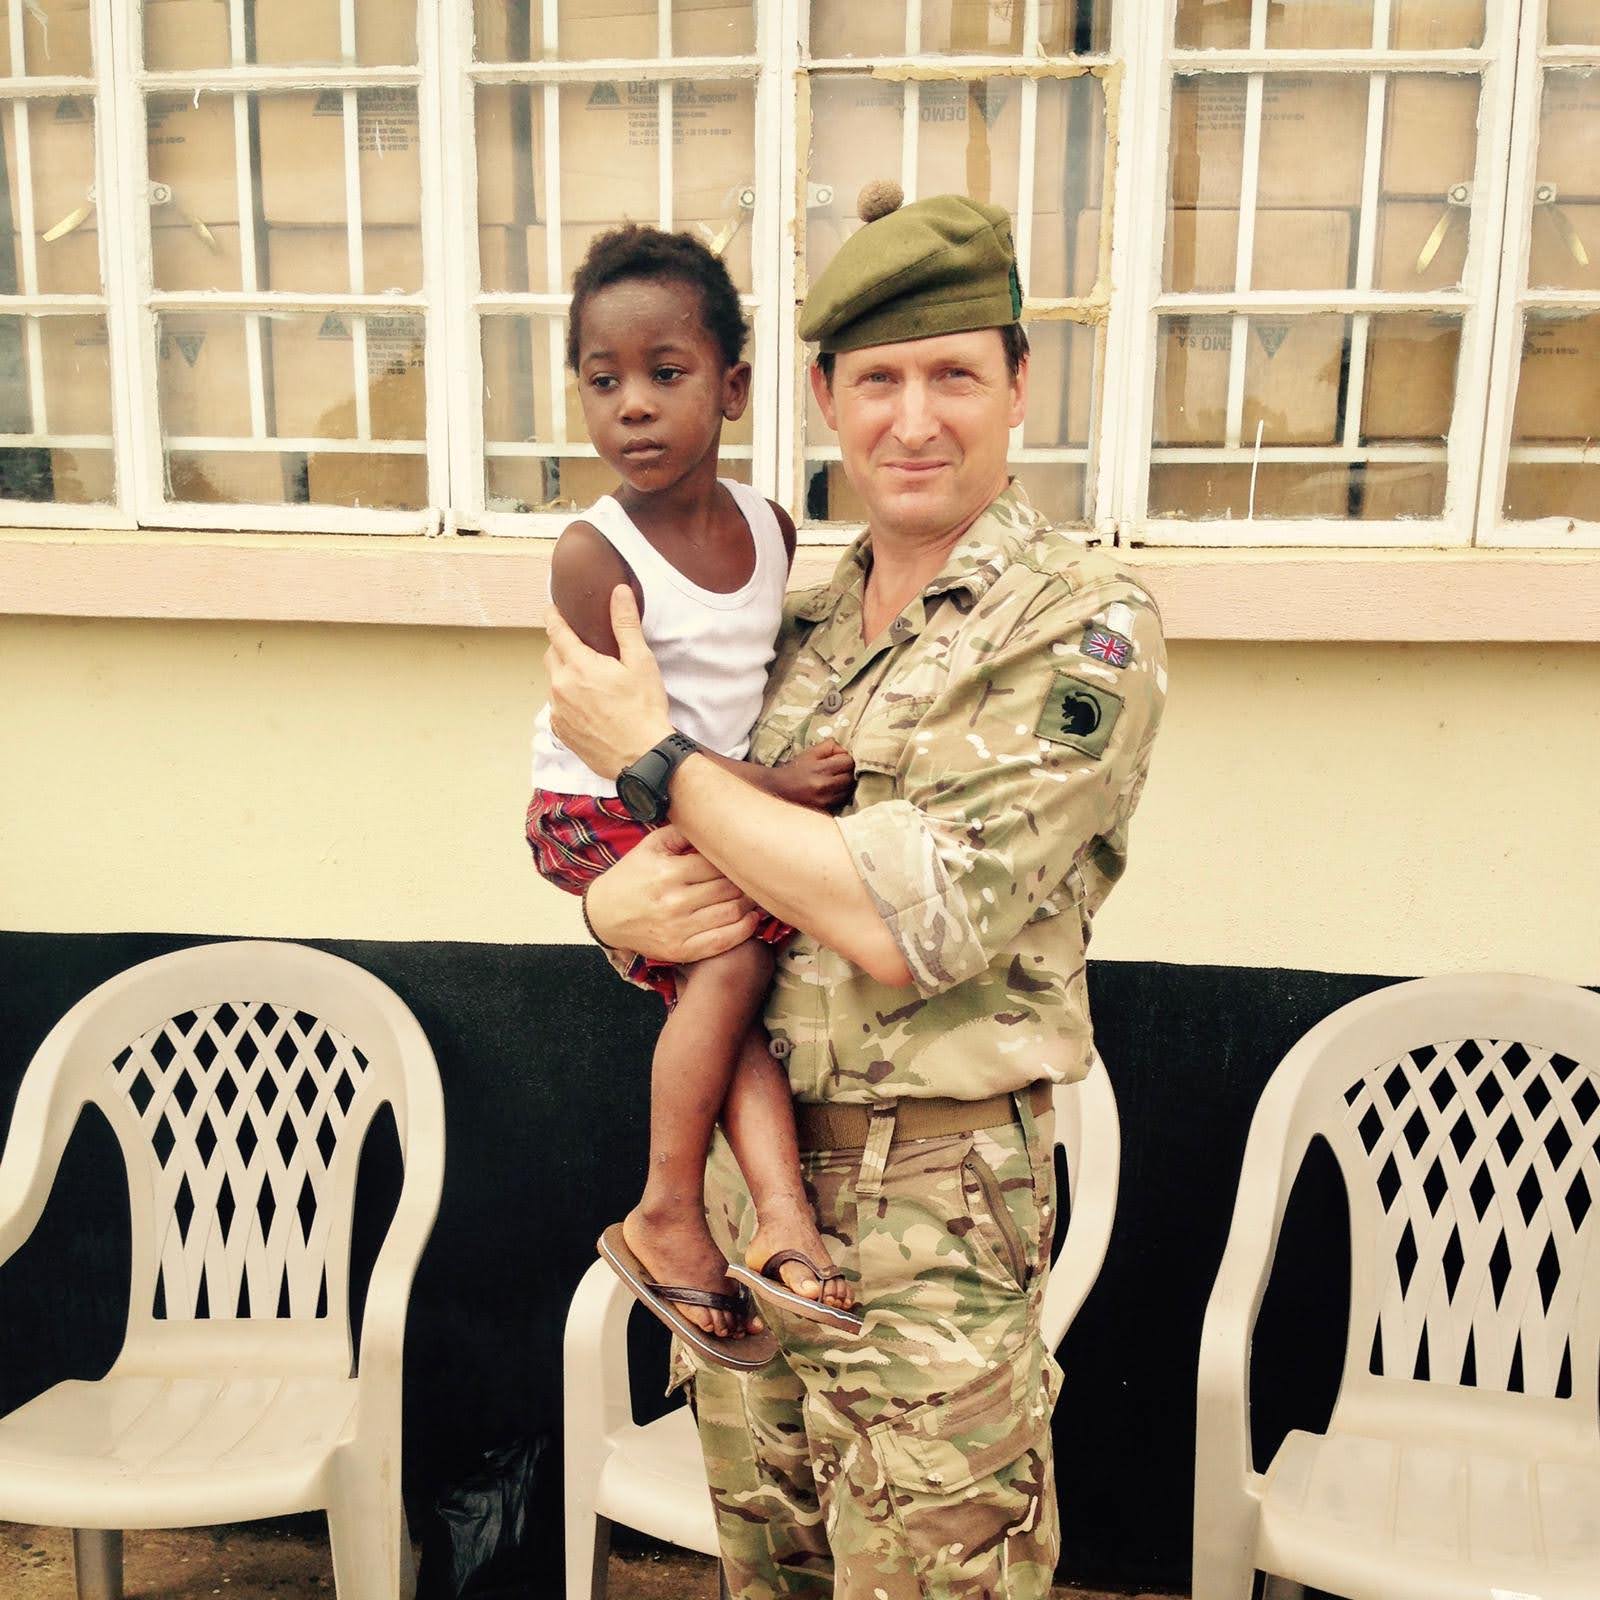 Maj Gen (Retd) Herbert with Child in Sierra Leone